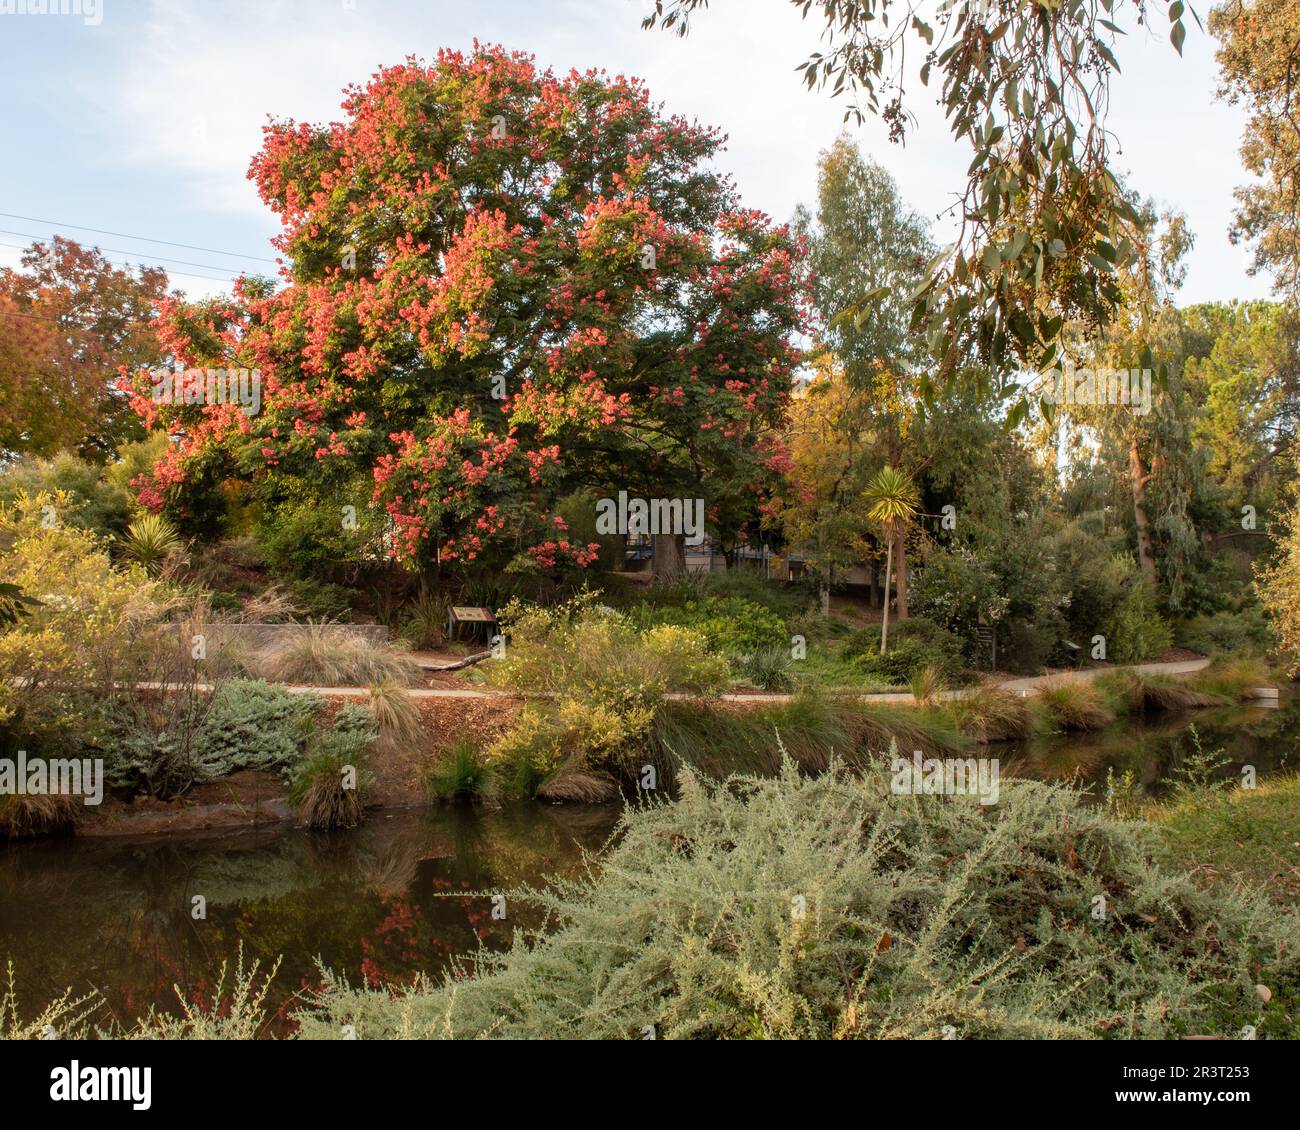 Couleurs d'automne à l'extrémité est de l'arboretum UC Davis au-dessus du lac Spafford, avec un magnifique arbre de pluie d'or (Samanea saman) Banque D'Images